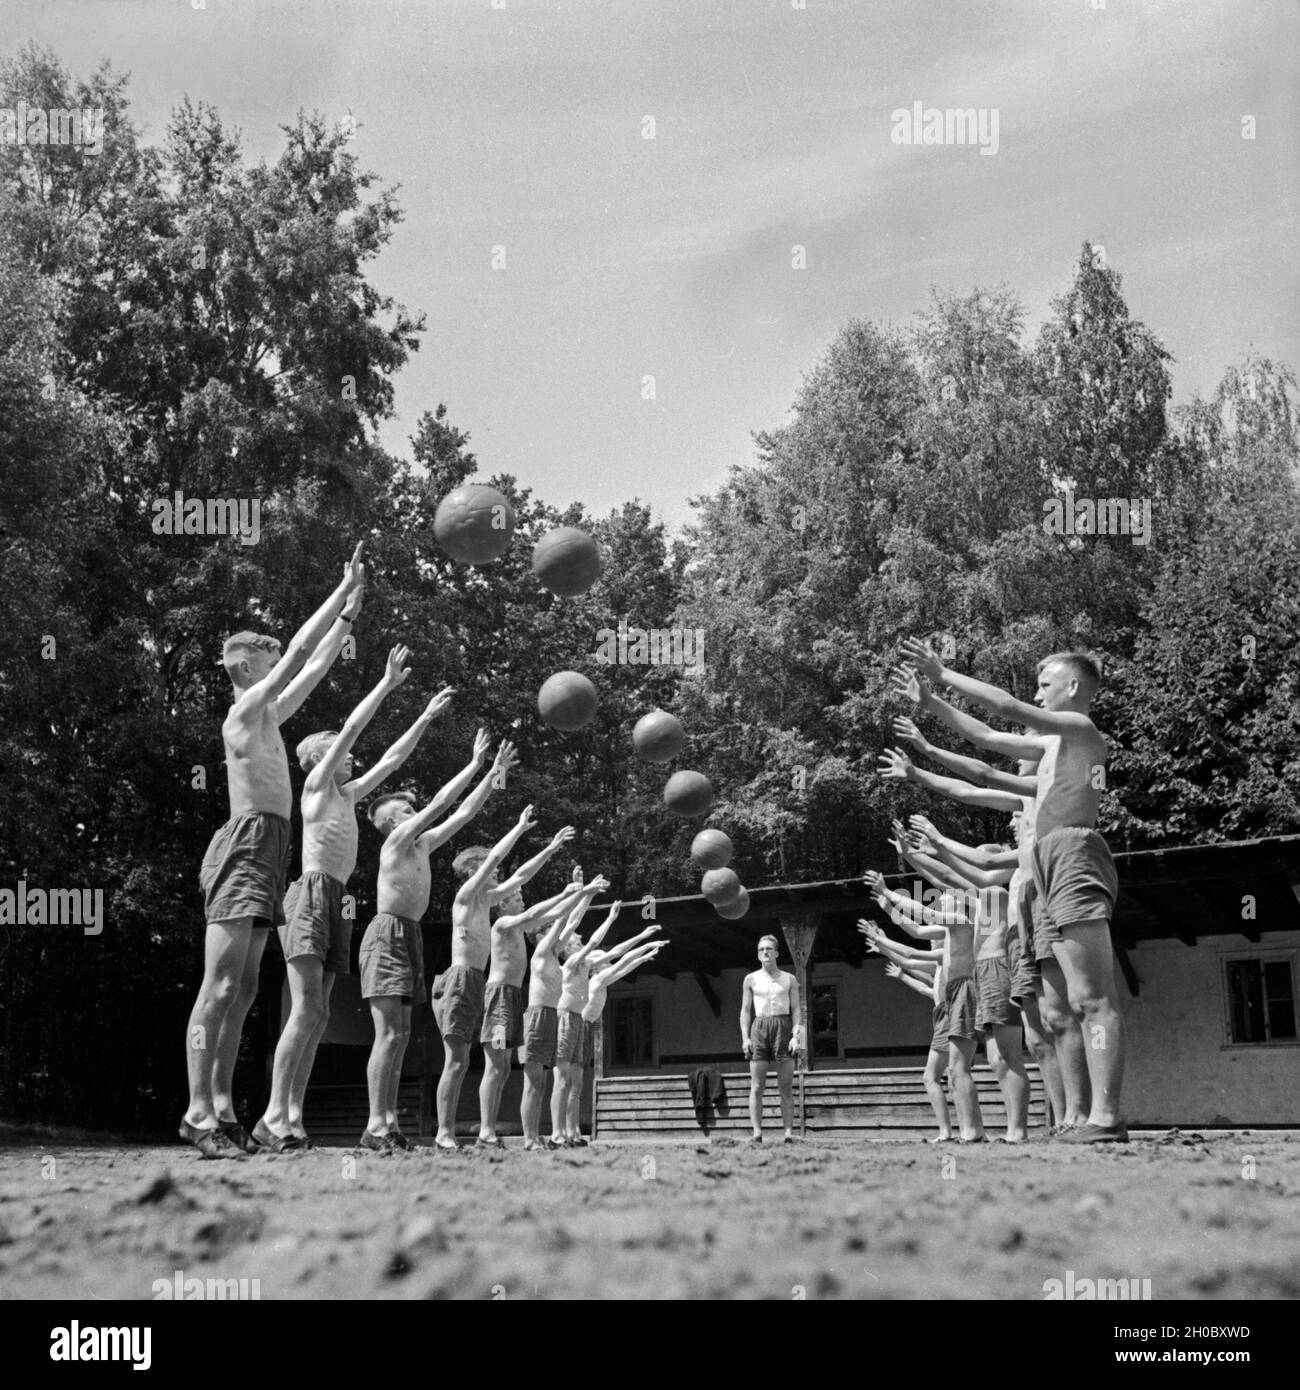 Die Jungen vom Landjahr Lager in Bevensen beim Frühsport, Deutschland 1930er Jahre. The boys of the Hitler youth camp at Bevensen doing their early morning exerising, Germany 1930s. Stock Photo